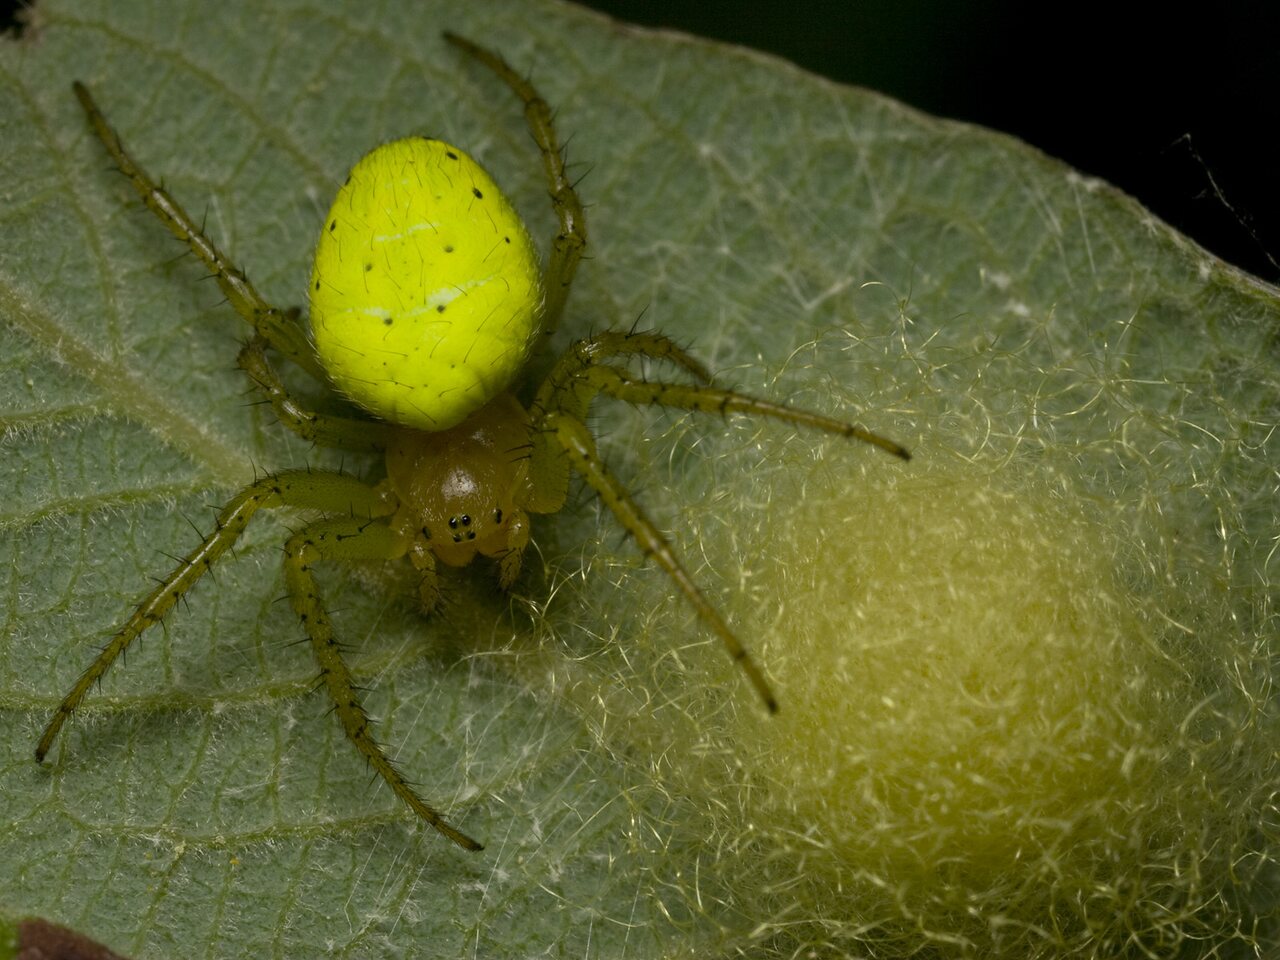 Araniella cucurbitina female with eggs · raudondėmis voriukas ♀, kiaušinėliai